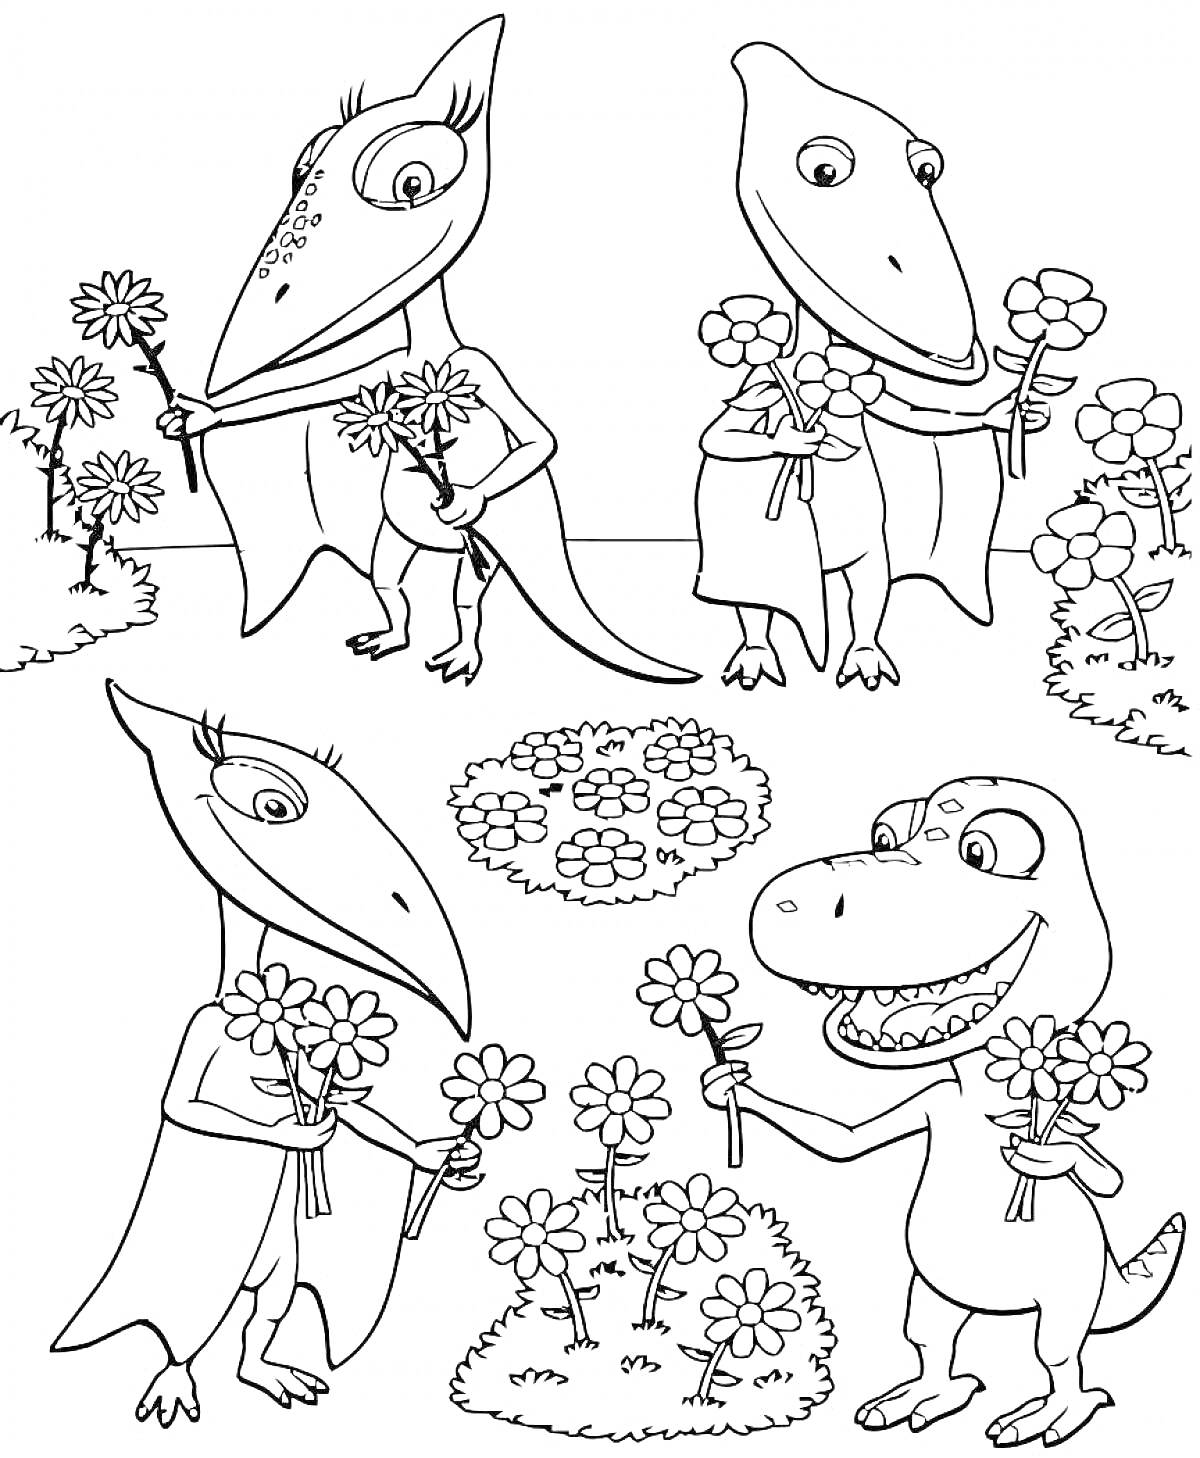 Раскраска Динозавры с цветами на поляне